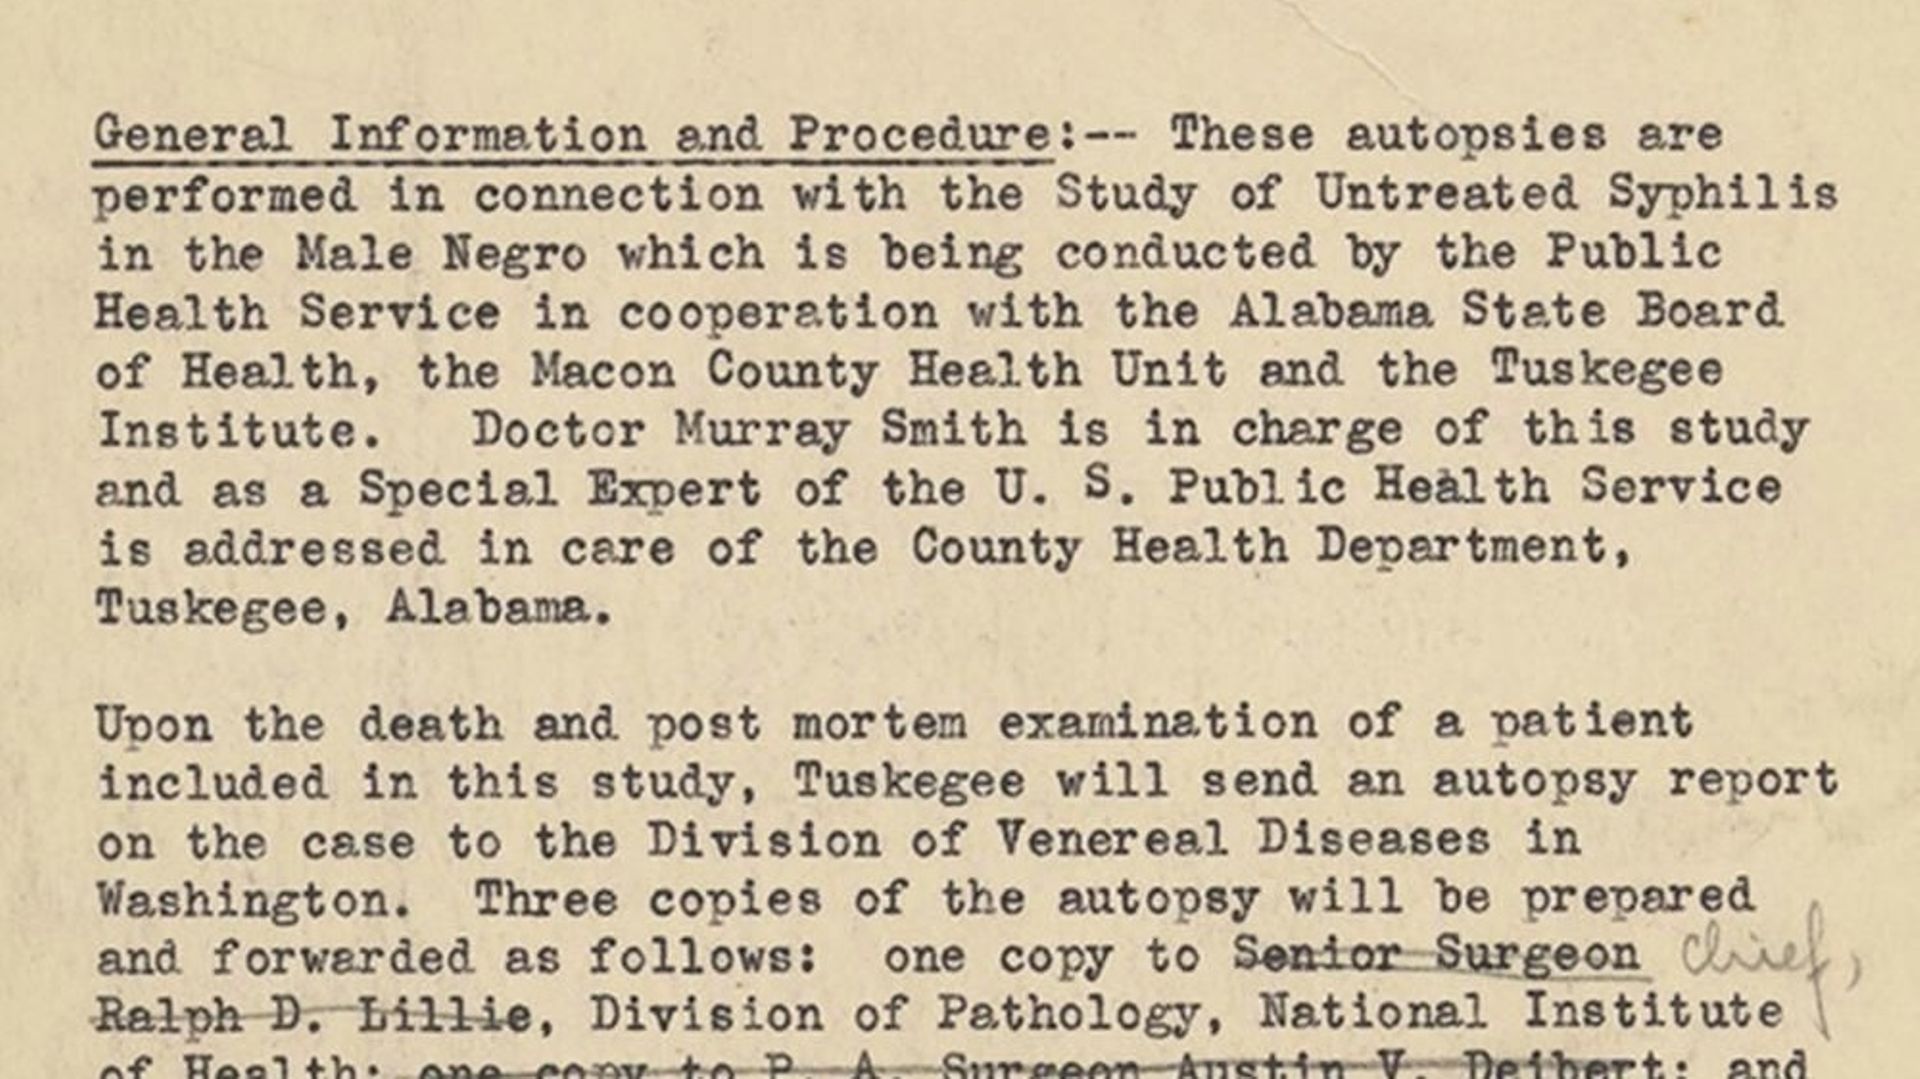 Cette image mise à disposition par les Archives nationales américaines montre une partie d’un document daté de 1940 décrivant les procédures de distribution des résultats d’autopsie des sujets de l’étude sur la syphilis de Tuskegee.